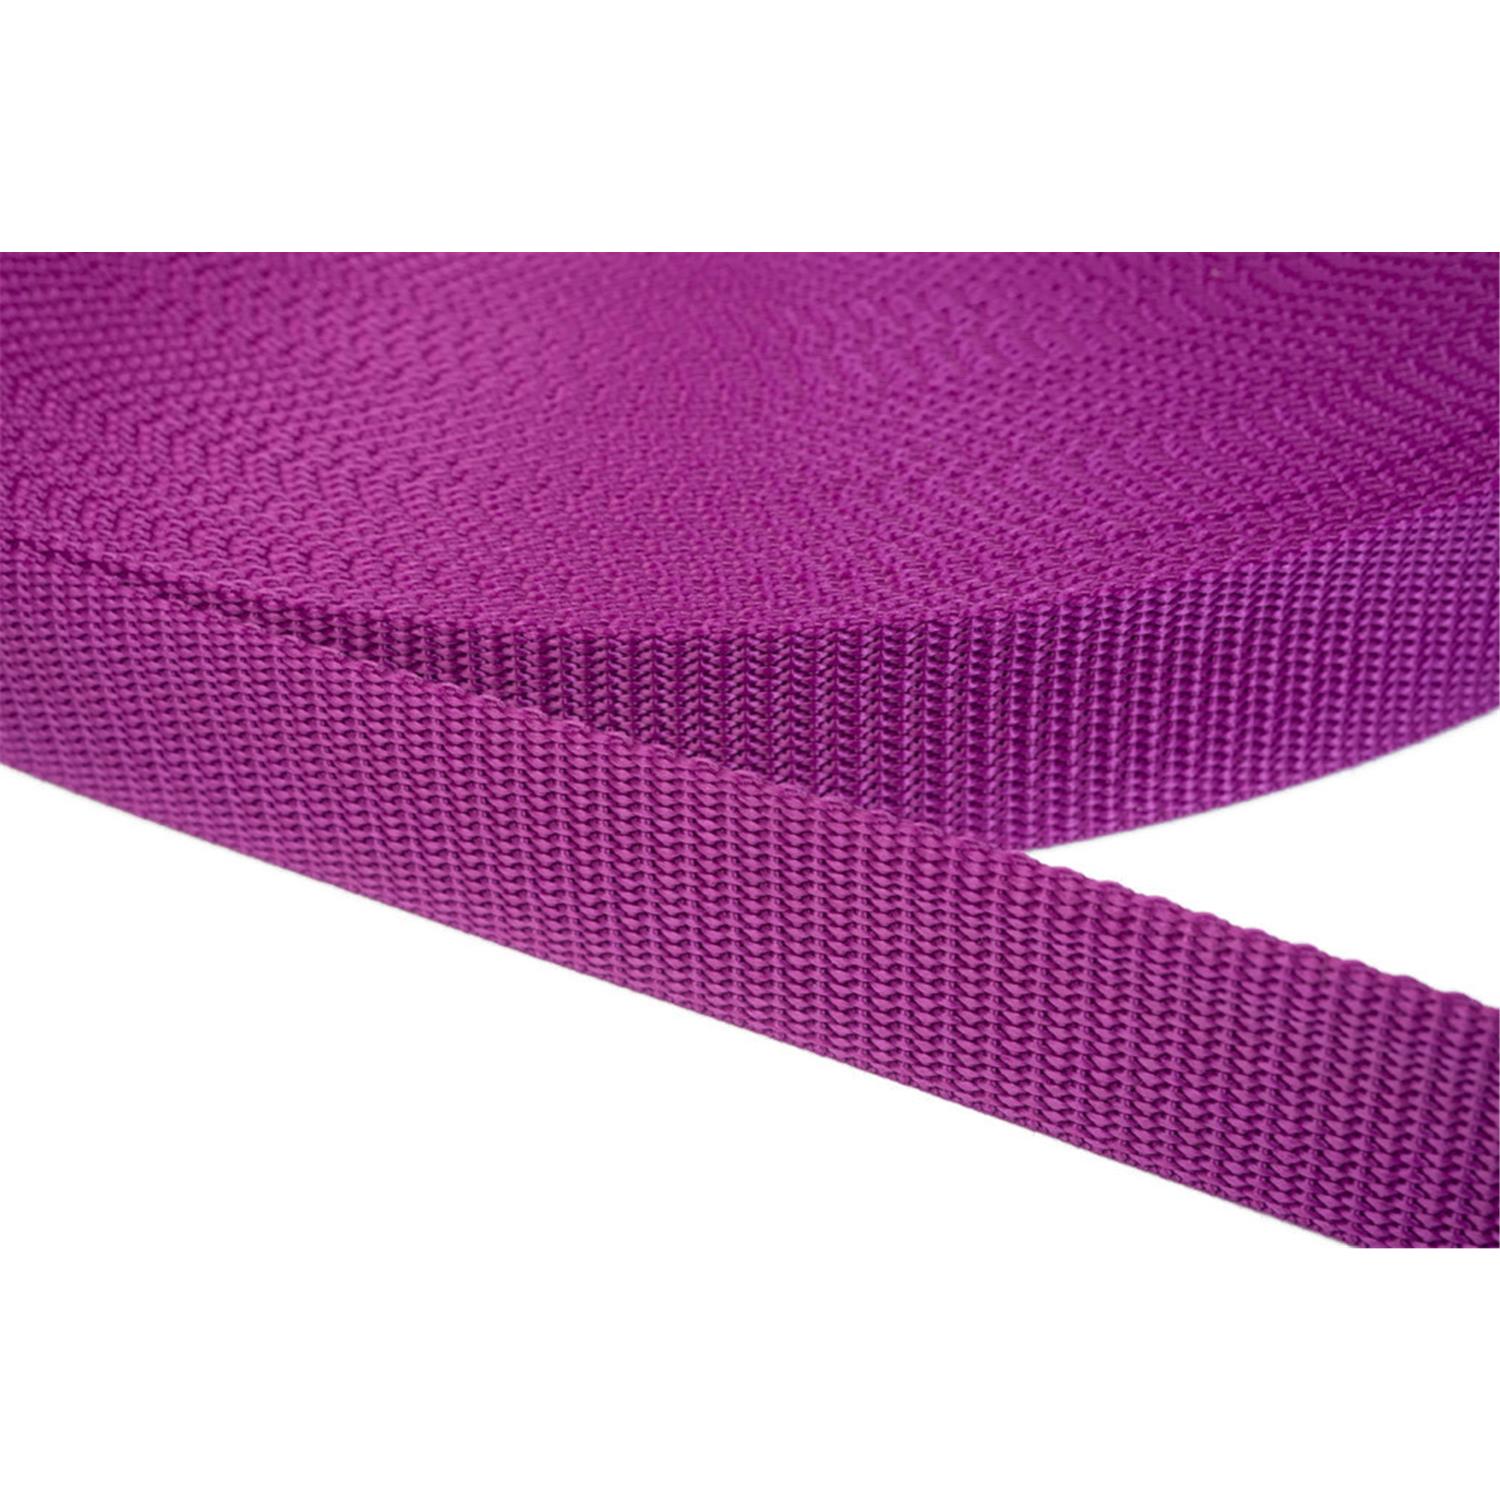 Gurtband 40mm breit aus Polypropylen in 41 Farben 22 - violettrot 6 Meter